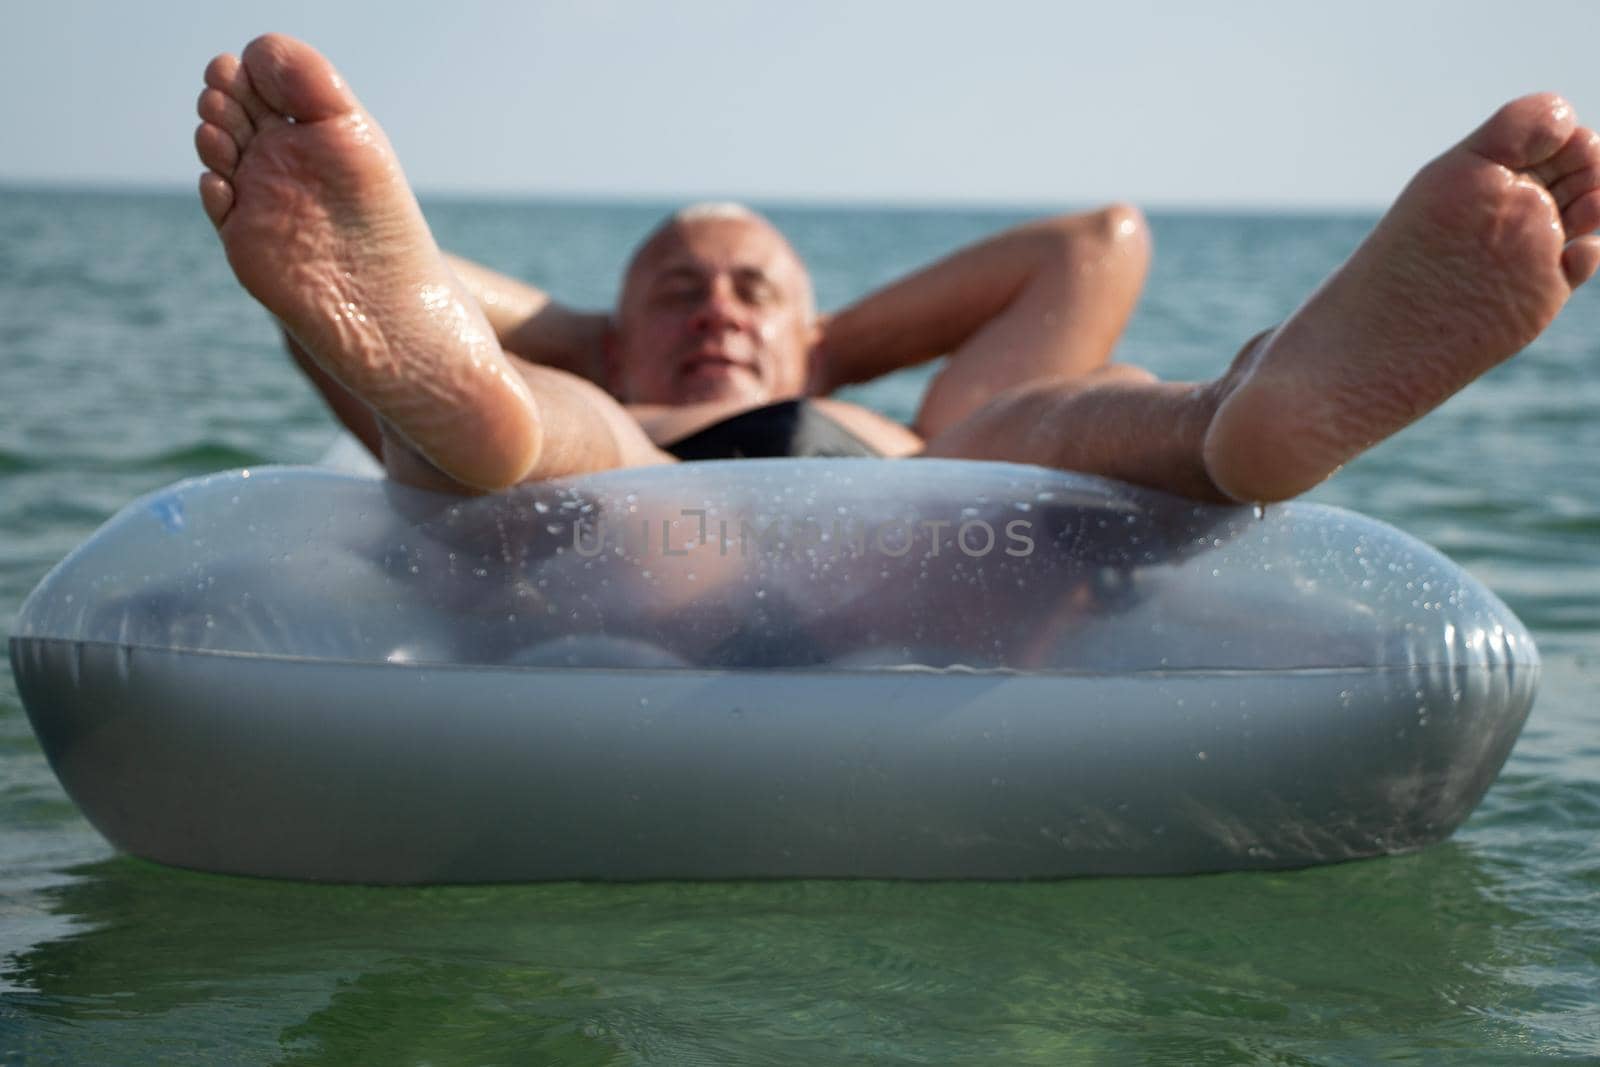 A man at sea with an air mattress. Beach vacation.